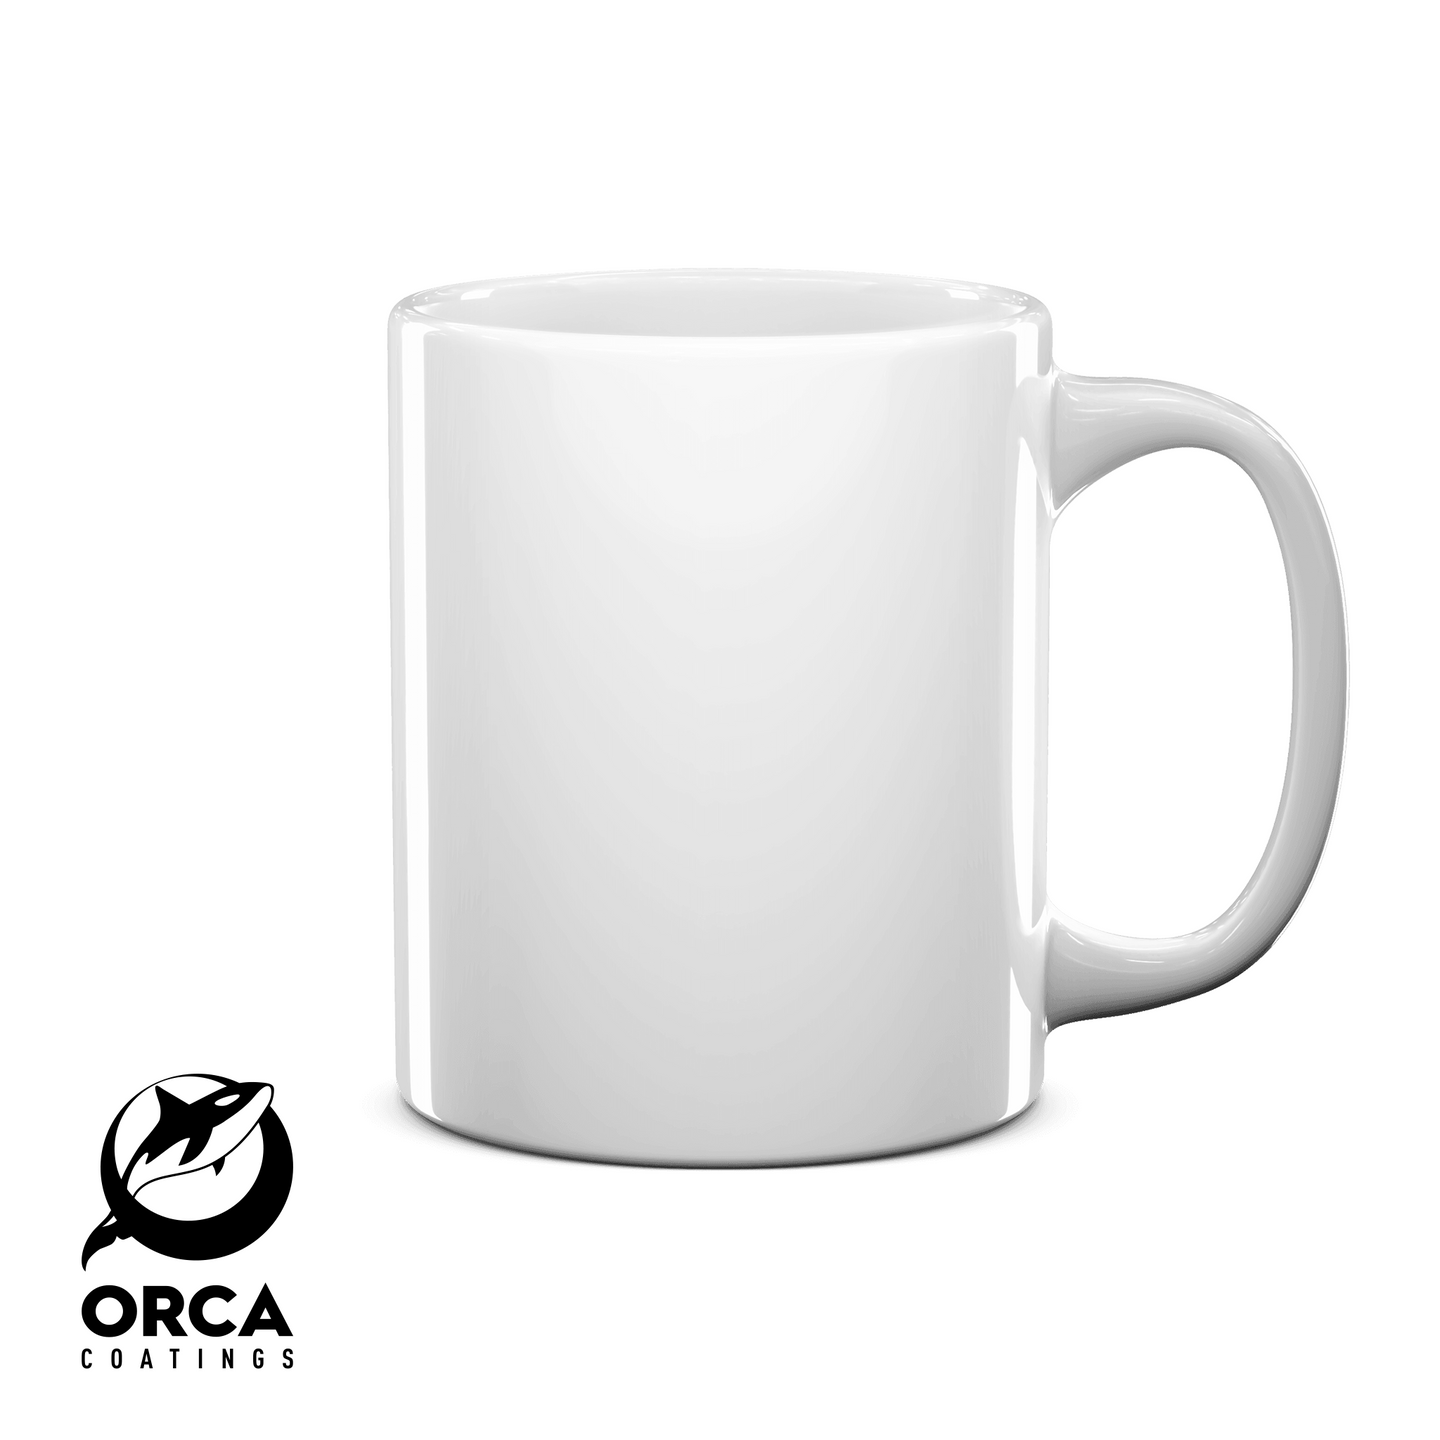 [BLACK ORCA] 11 oz White Sublimation Mug - 36/PK